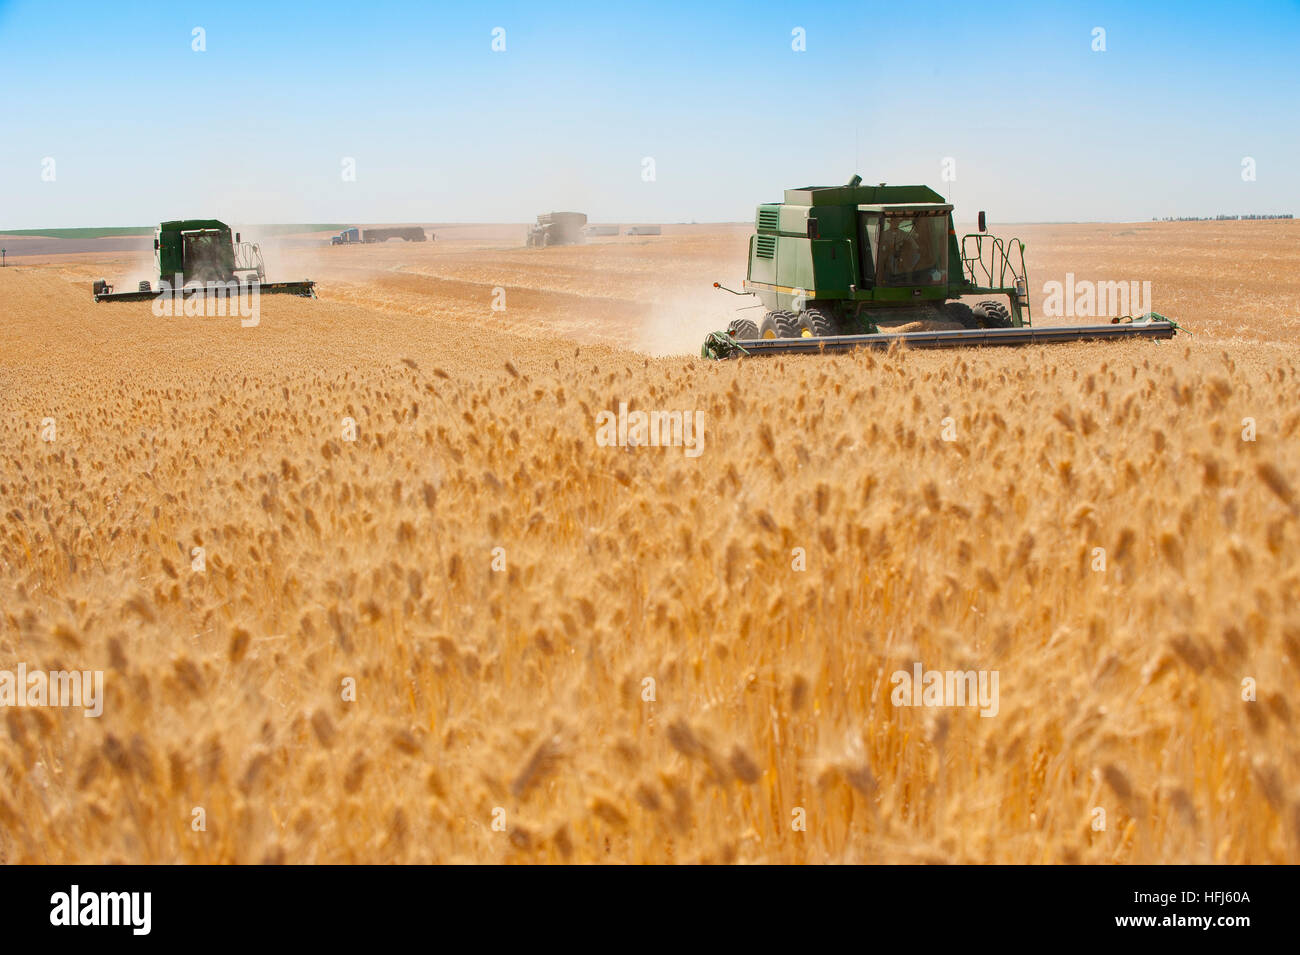 La récolte de blé dans l'Est de l'état de Washington. Domaines de golden grain sont récoltés pour l'exportation et la consommation intérieure. Banque D'Images